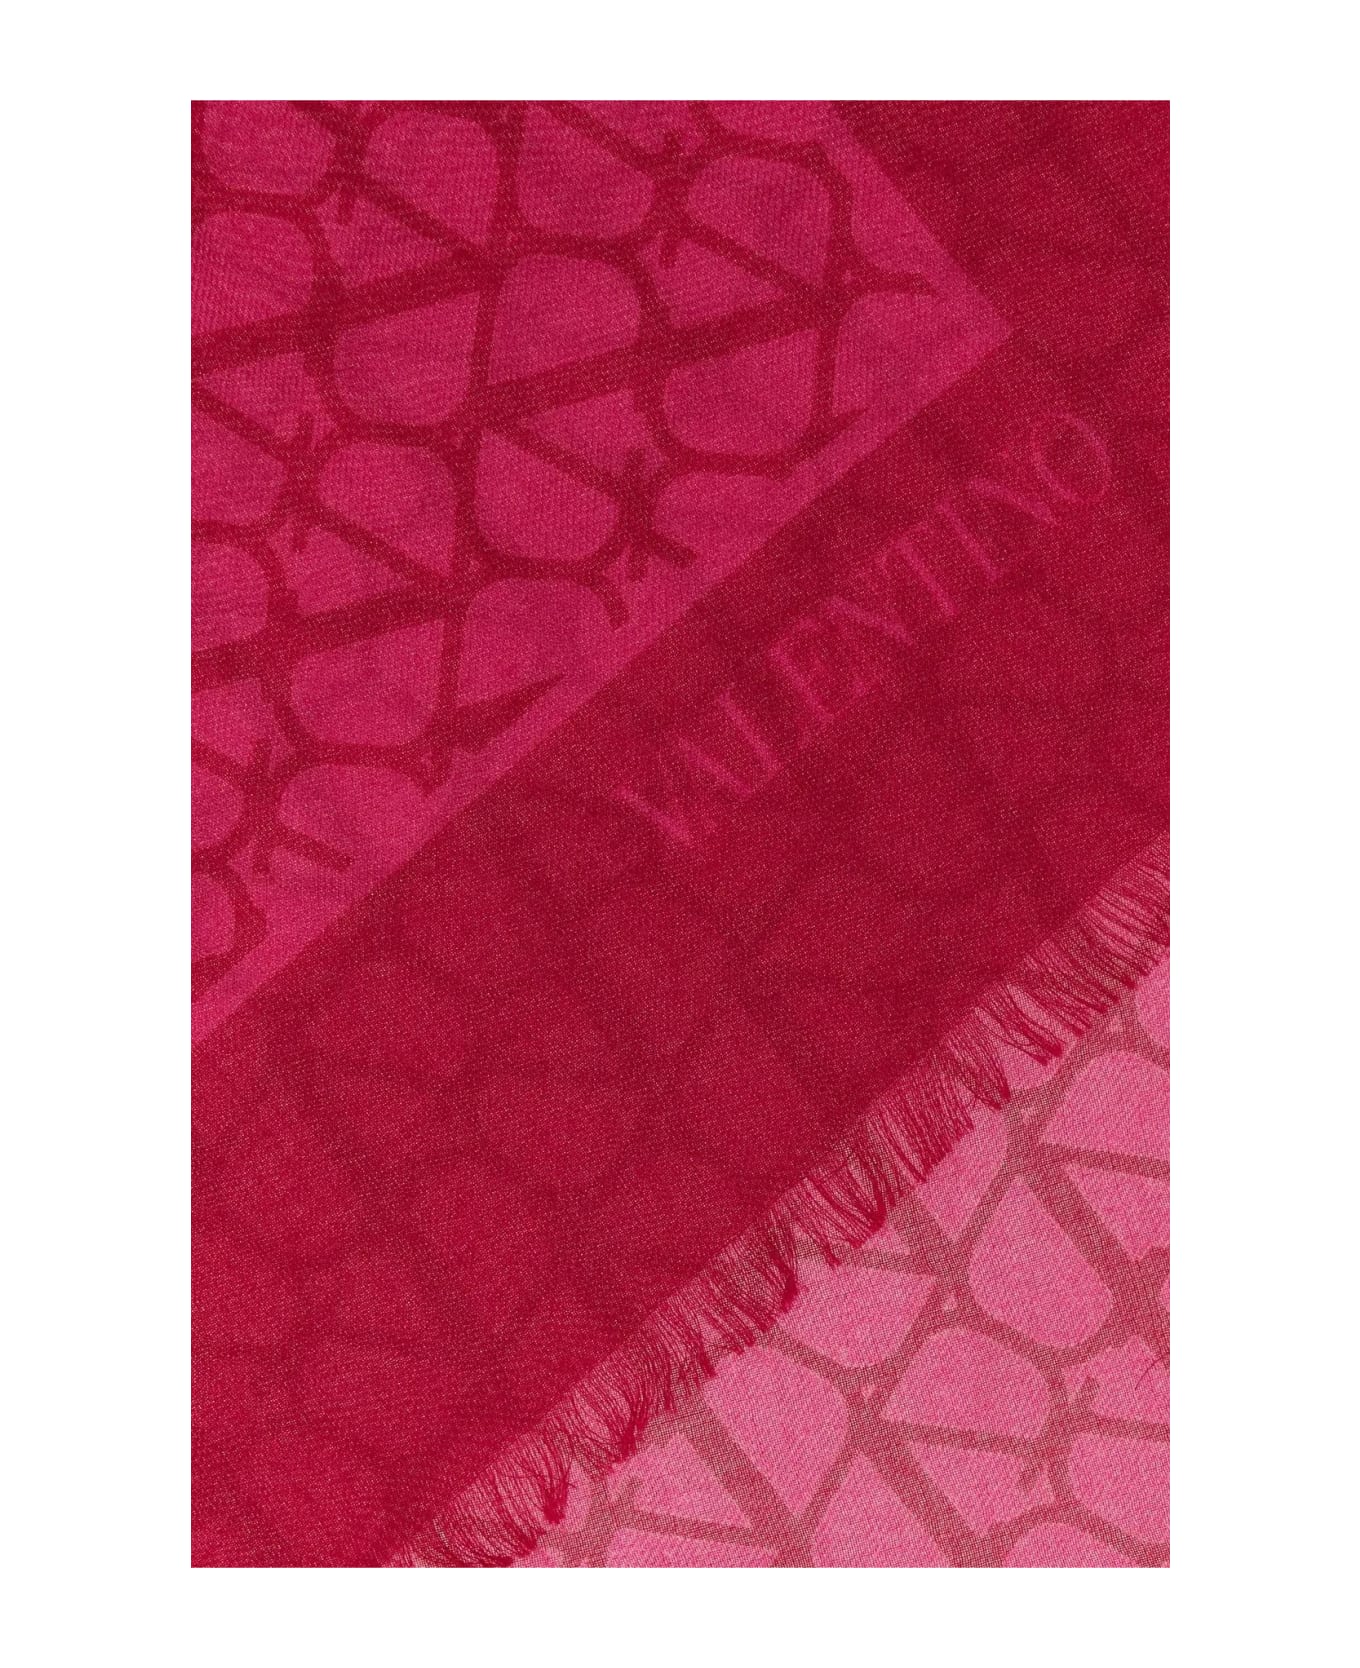 Valentino Garavani Embroidered Cashmere Blend Scarf - Pink pp